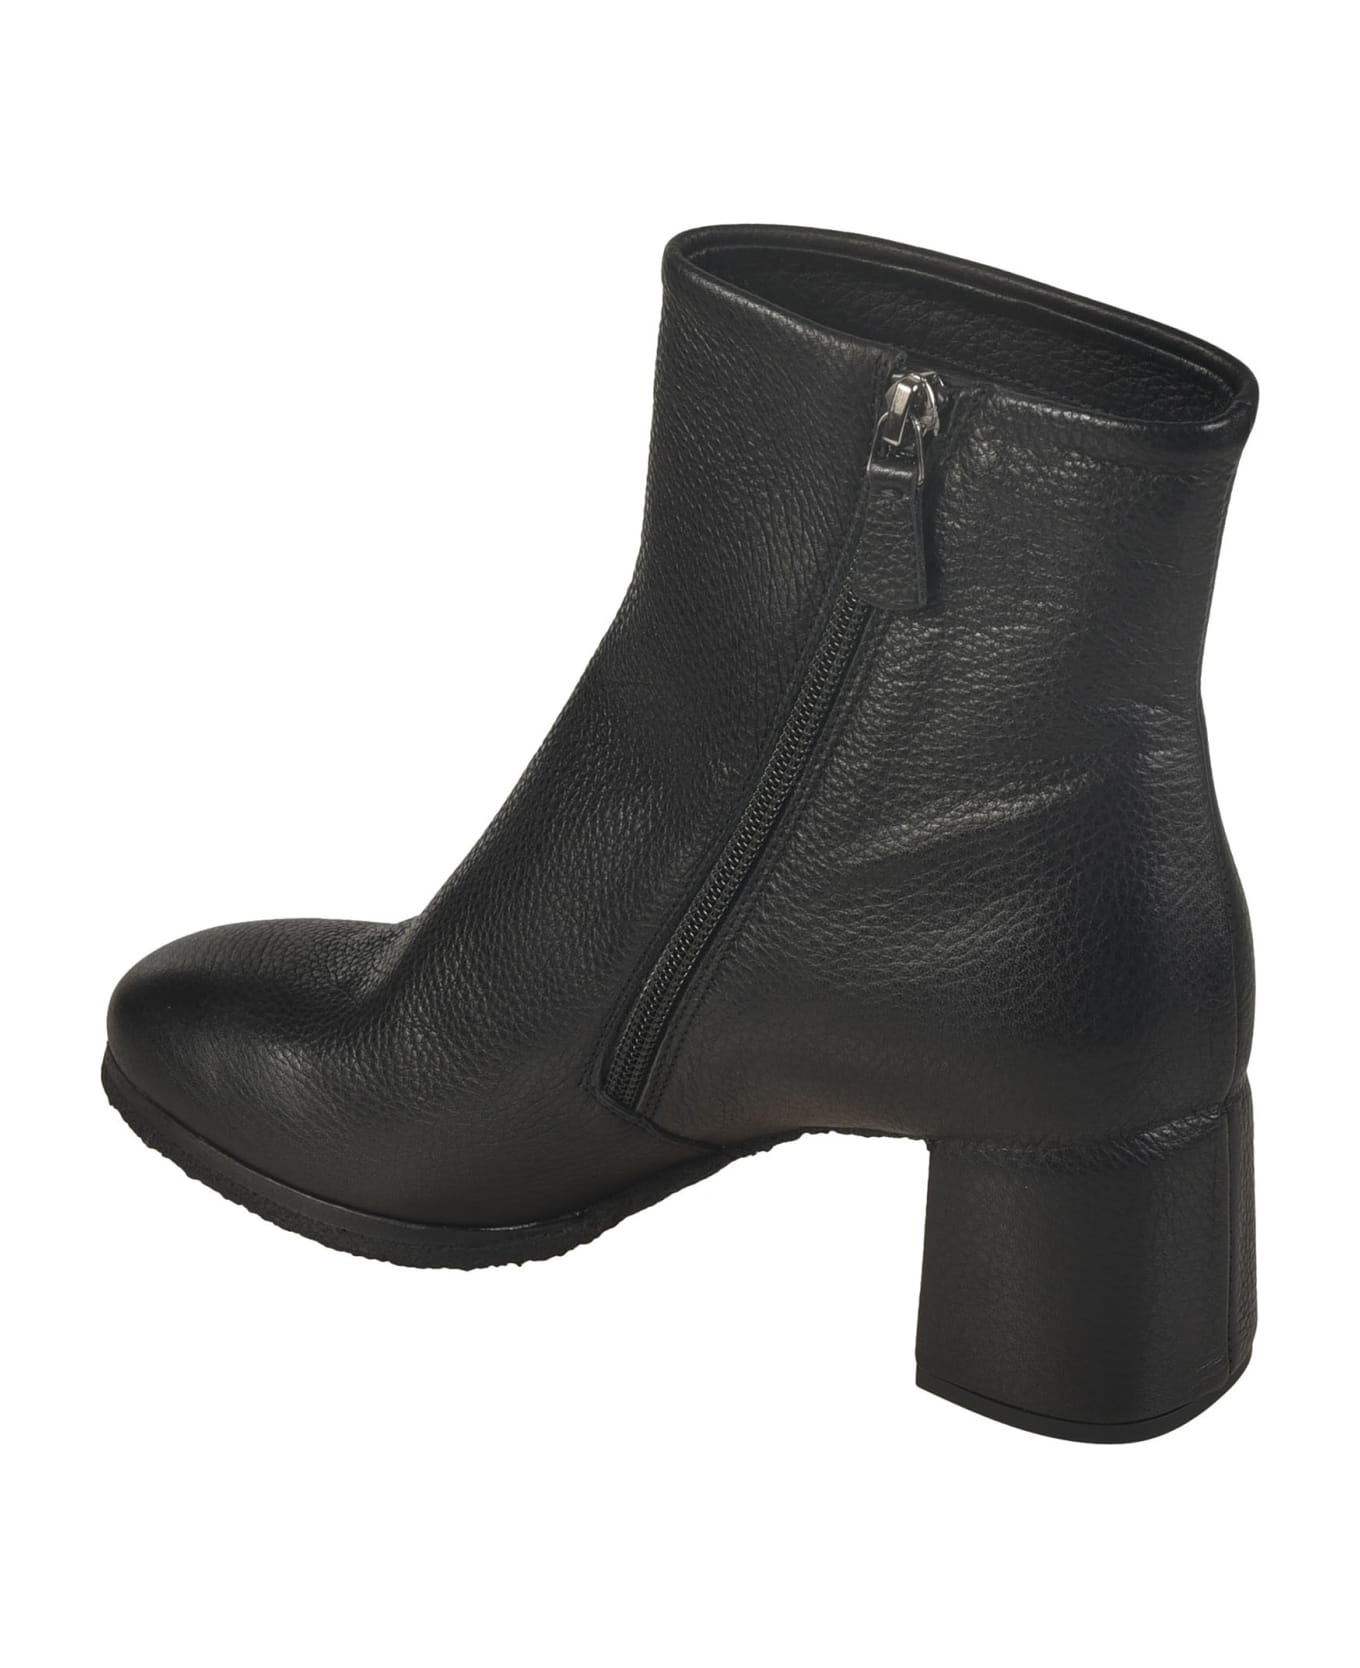 Del Carlo Side Zip Boots - Black